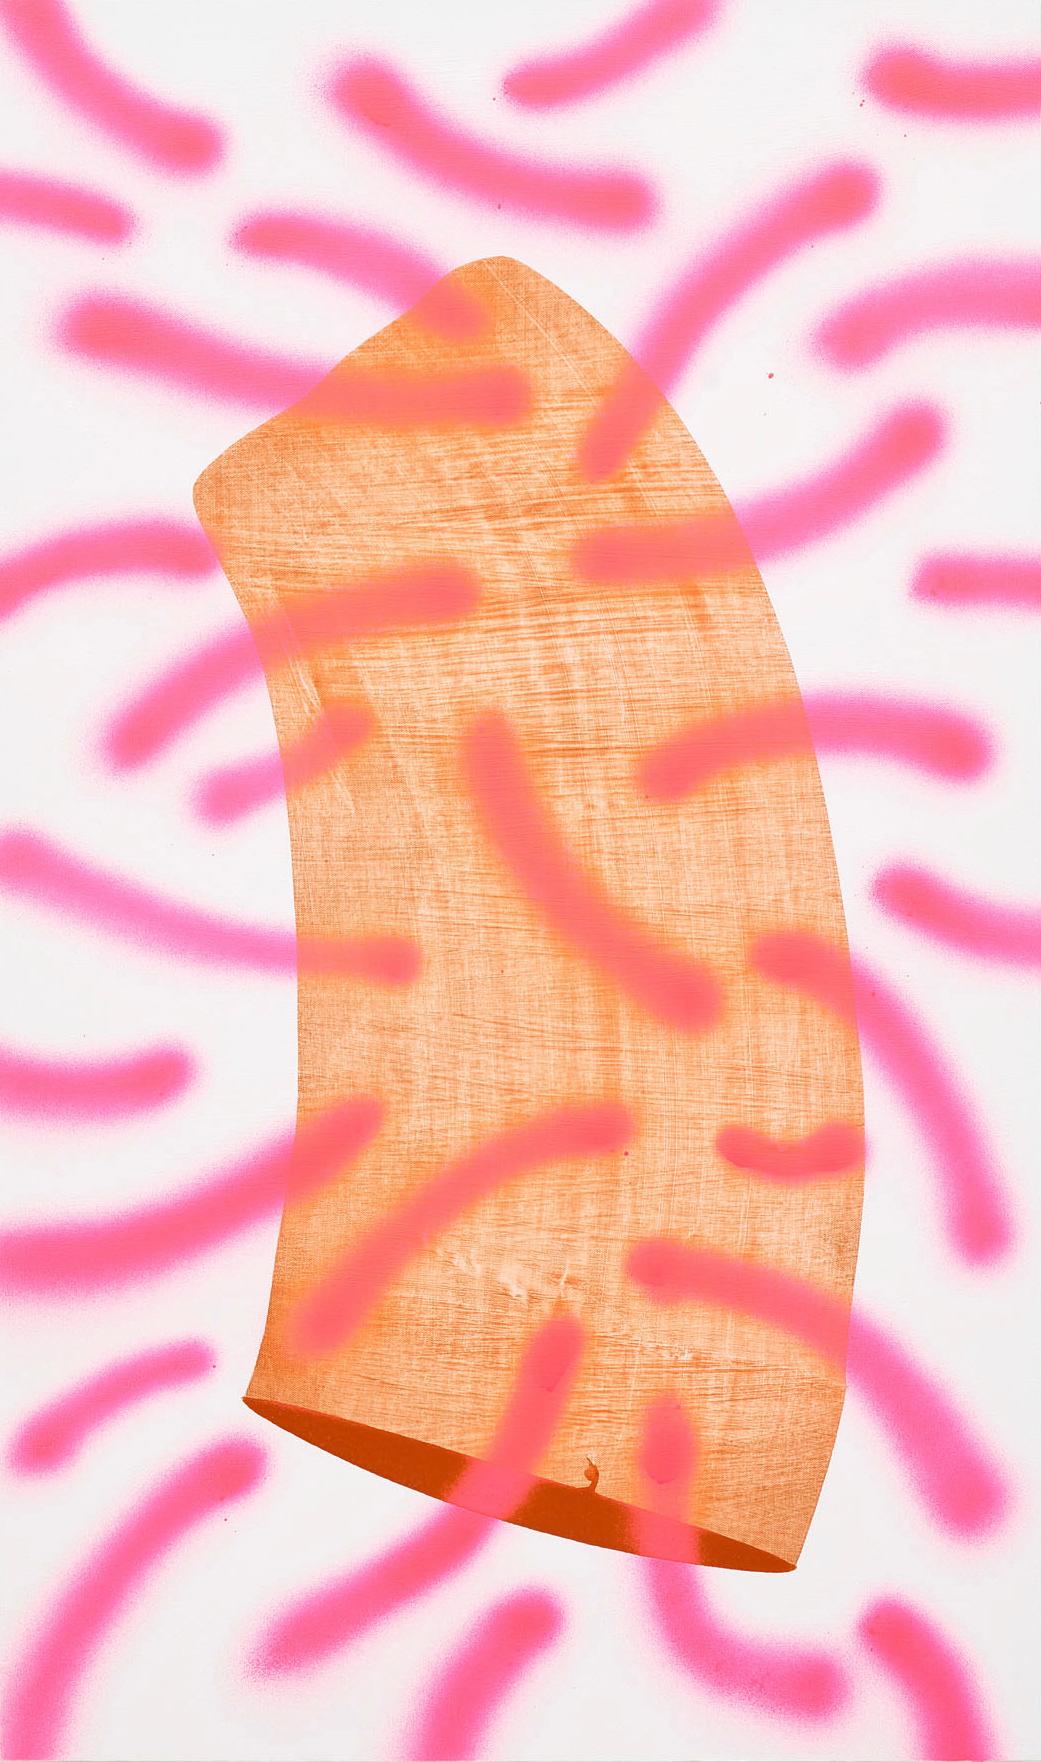 Mel Reese Abstract Painting – "Sexual Pleasure", zeitgenössische abstrakte Acryl- und Sprühfarbe in Pink und Orange